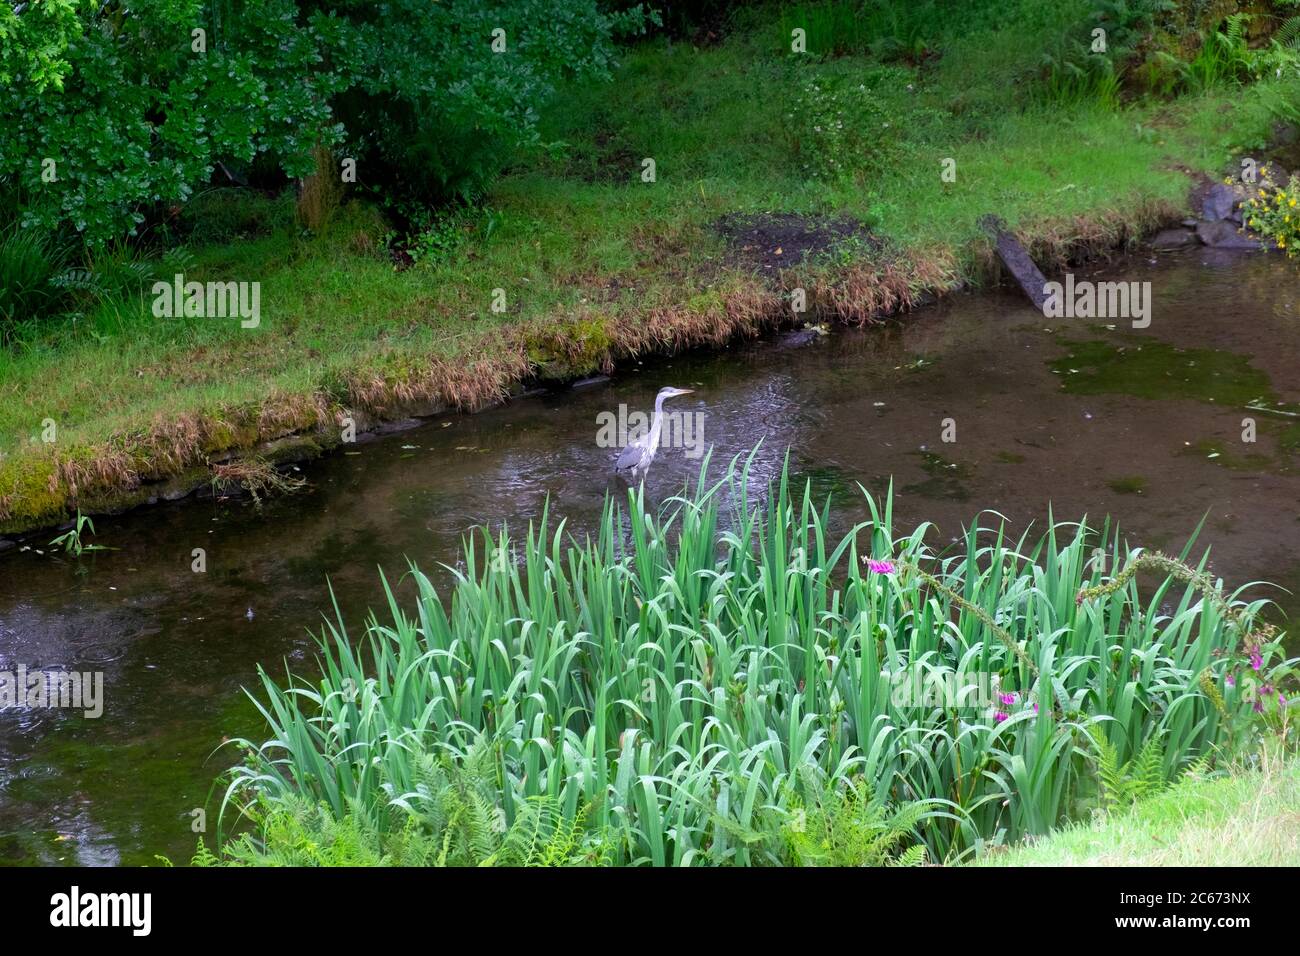 Héron gris Ardea cinerea debout se nourrissant dans un étang de jardin avec des plantes d'iris d'eau en été juillet Carmarthenshire pays de Galles UK KATHY DEWITT Banque D'Images